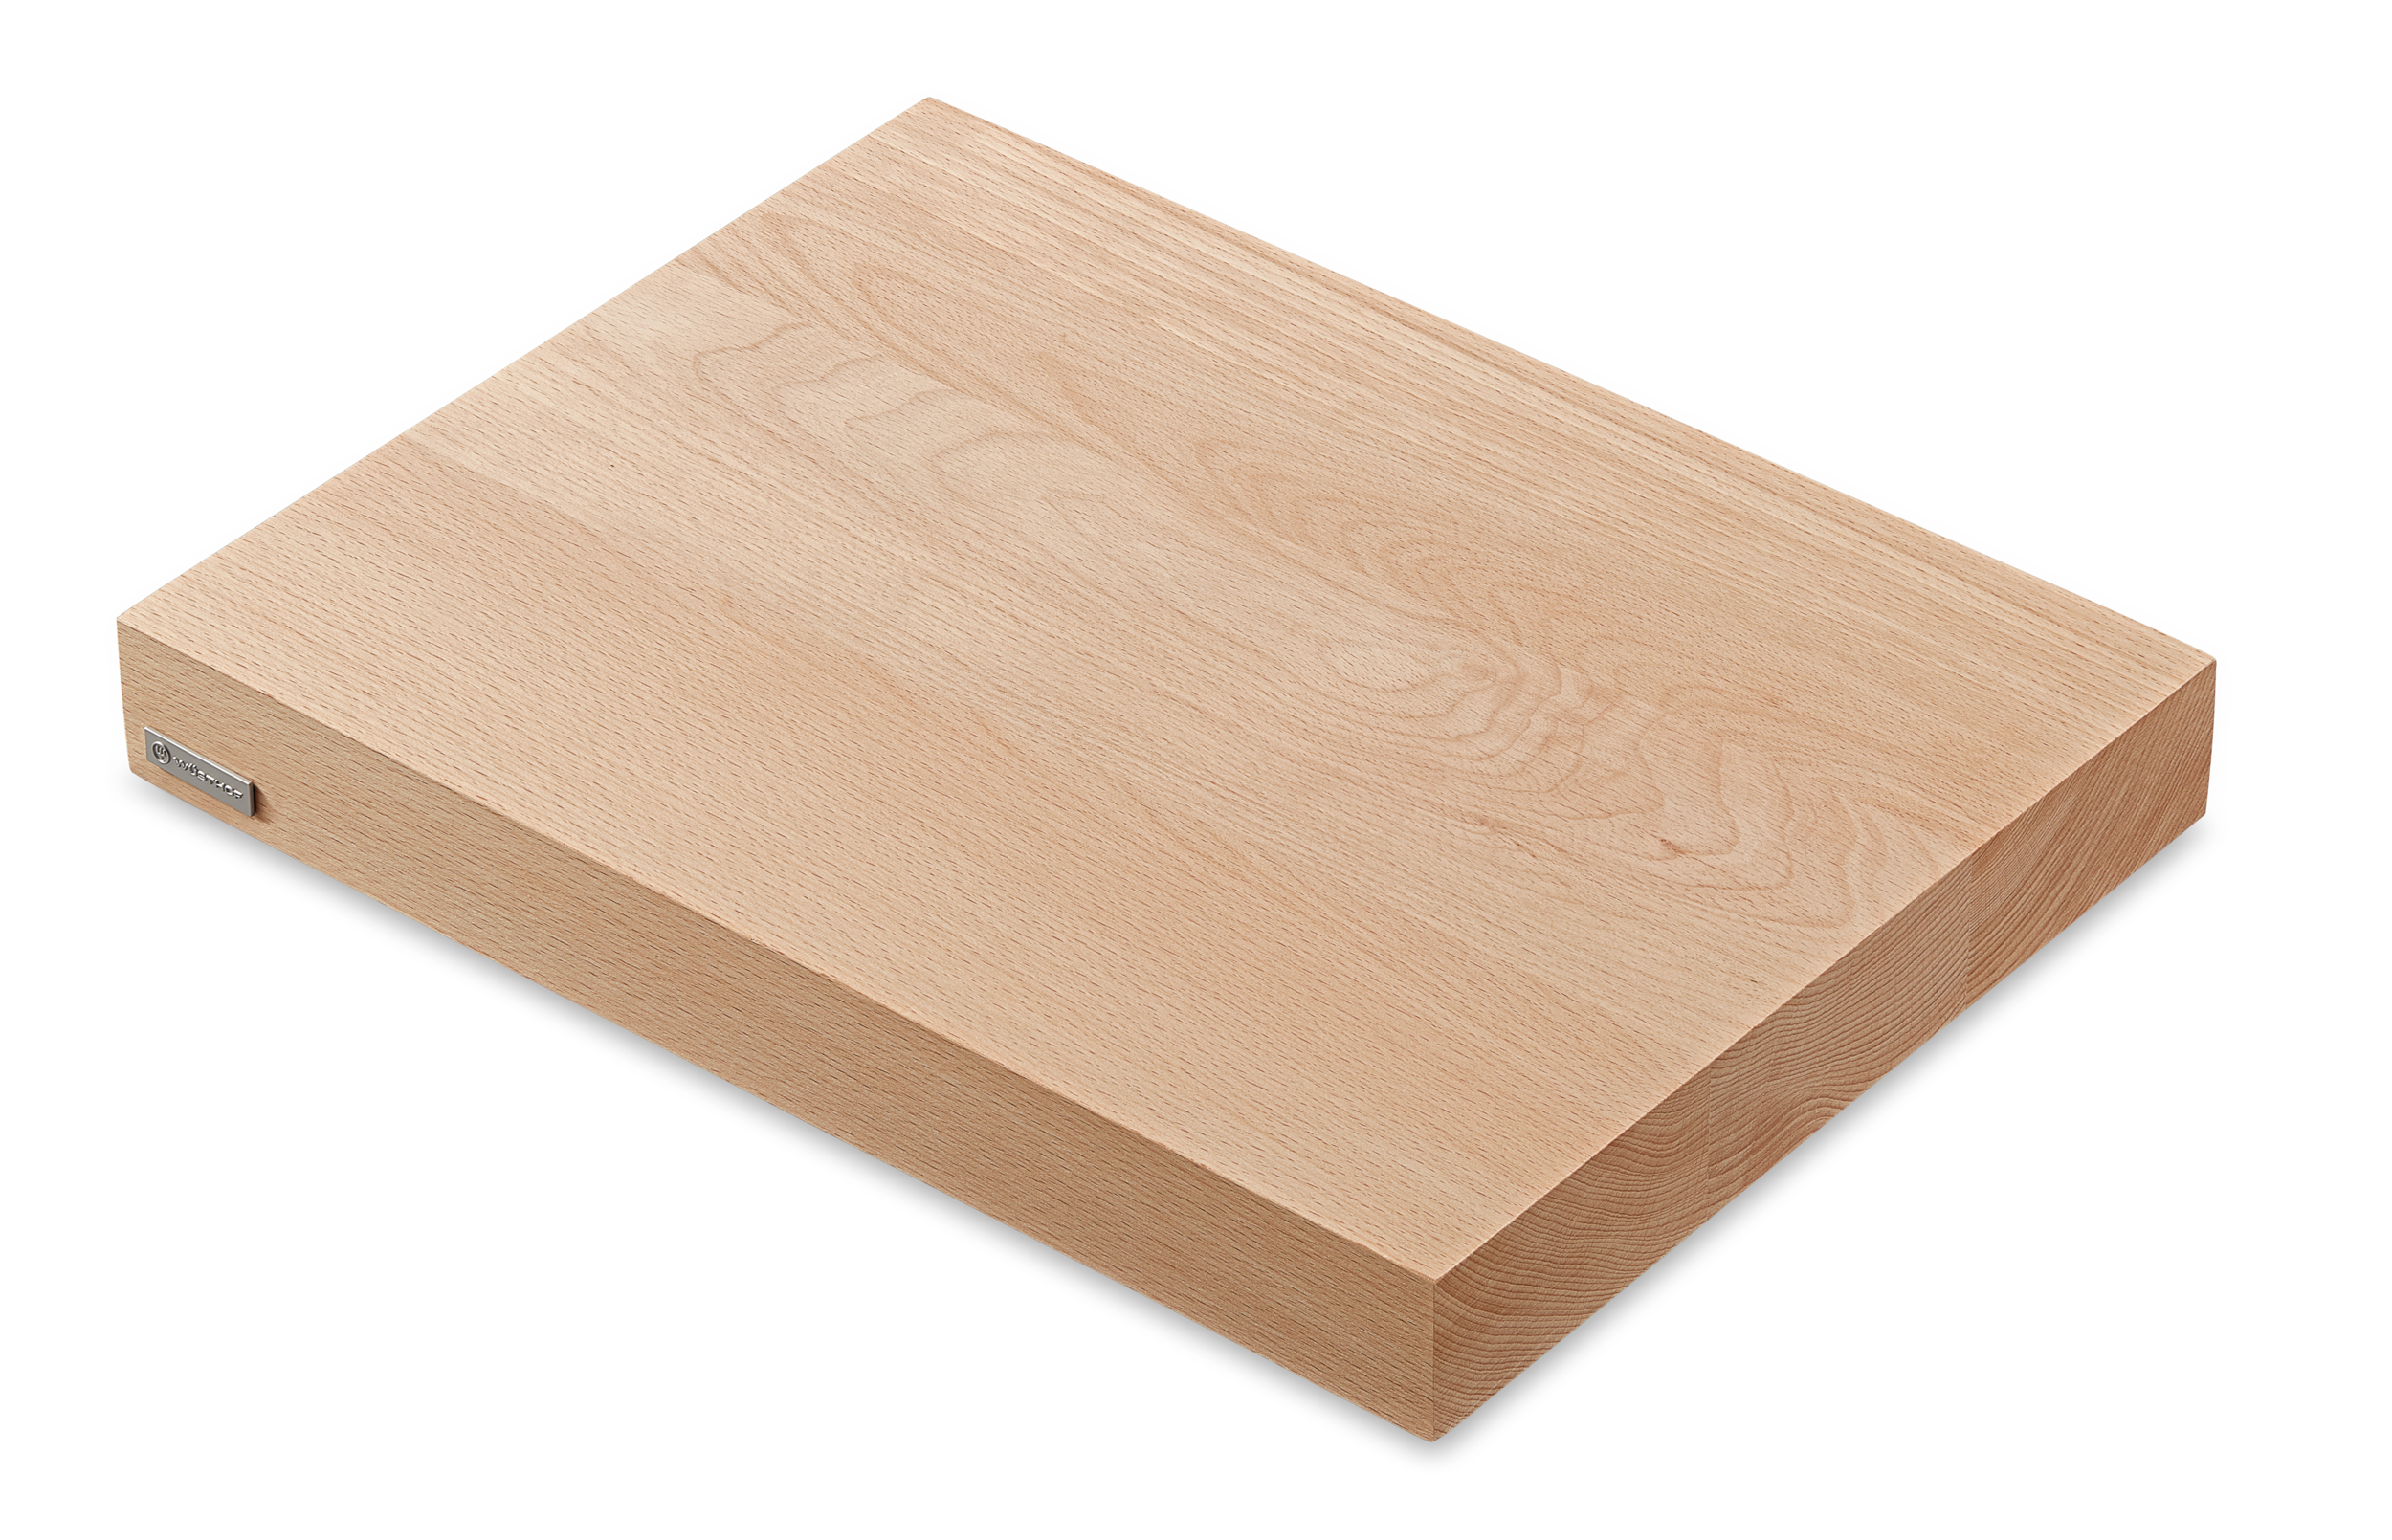 Wusthof 7292 cutting board for bread